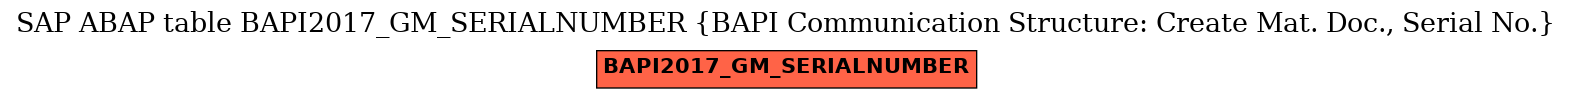 E-R Diagram for table BAPI2017_GM_SERIALNUMBER (BAPI Communication Structure: Create Mat. Doc., Serial No.)